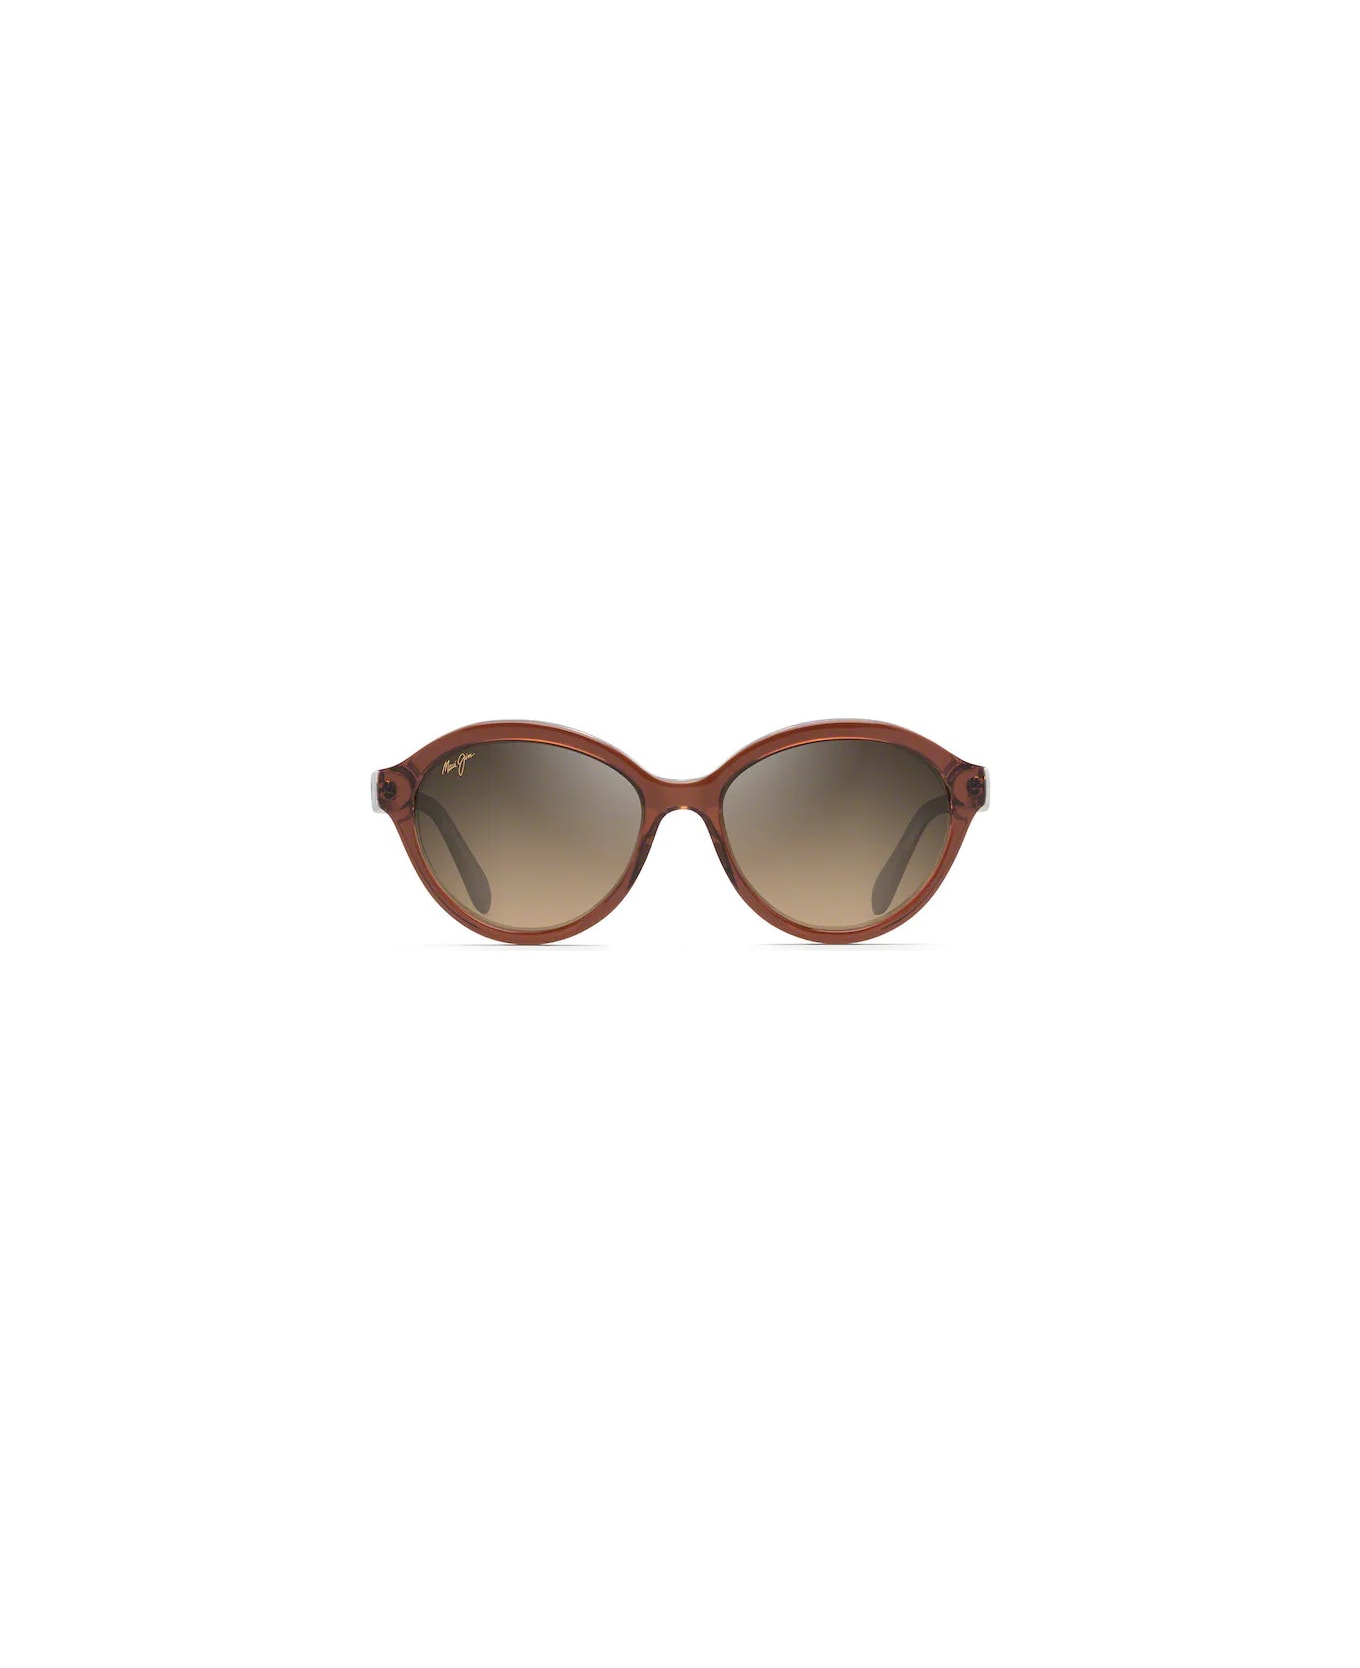 Maui Jim Mariana 828 25E Sunglasses サングラス